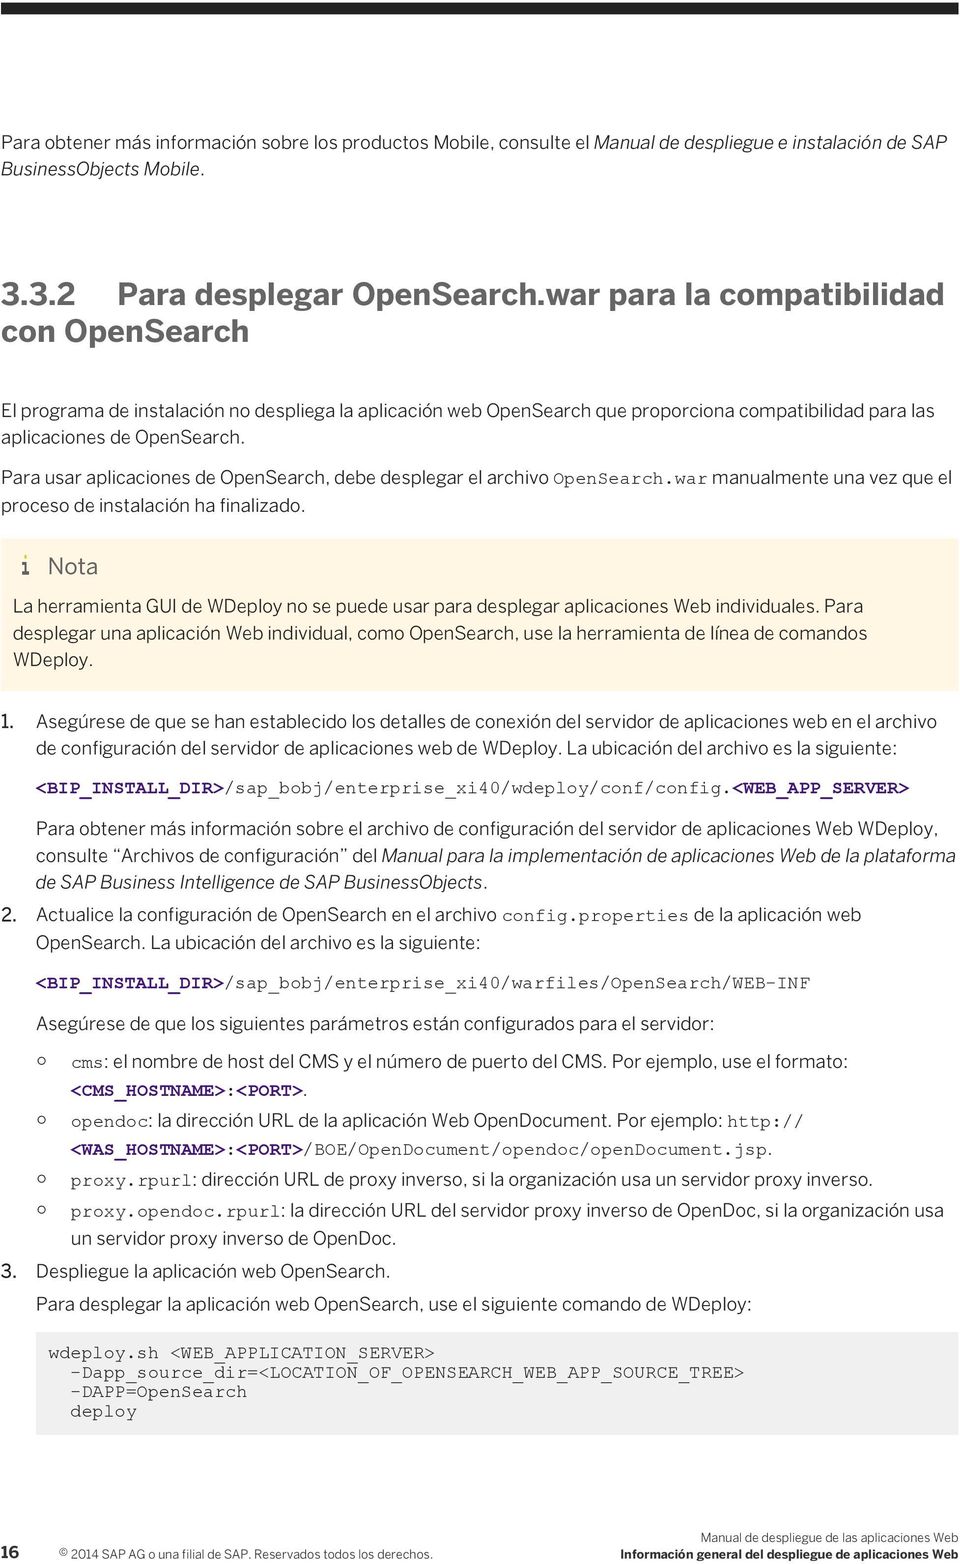 Para usar aplicaciones de OpenSearch, debe desplegar el archivo OpenSearch.war manualmente una vez que el proceso de instalación ha finalizado.